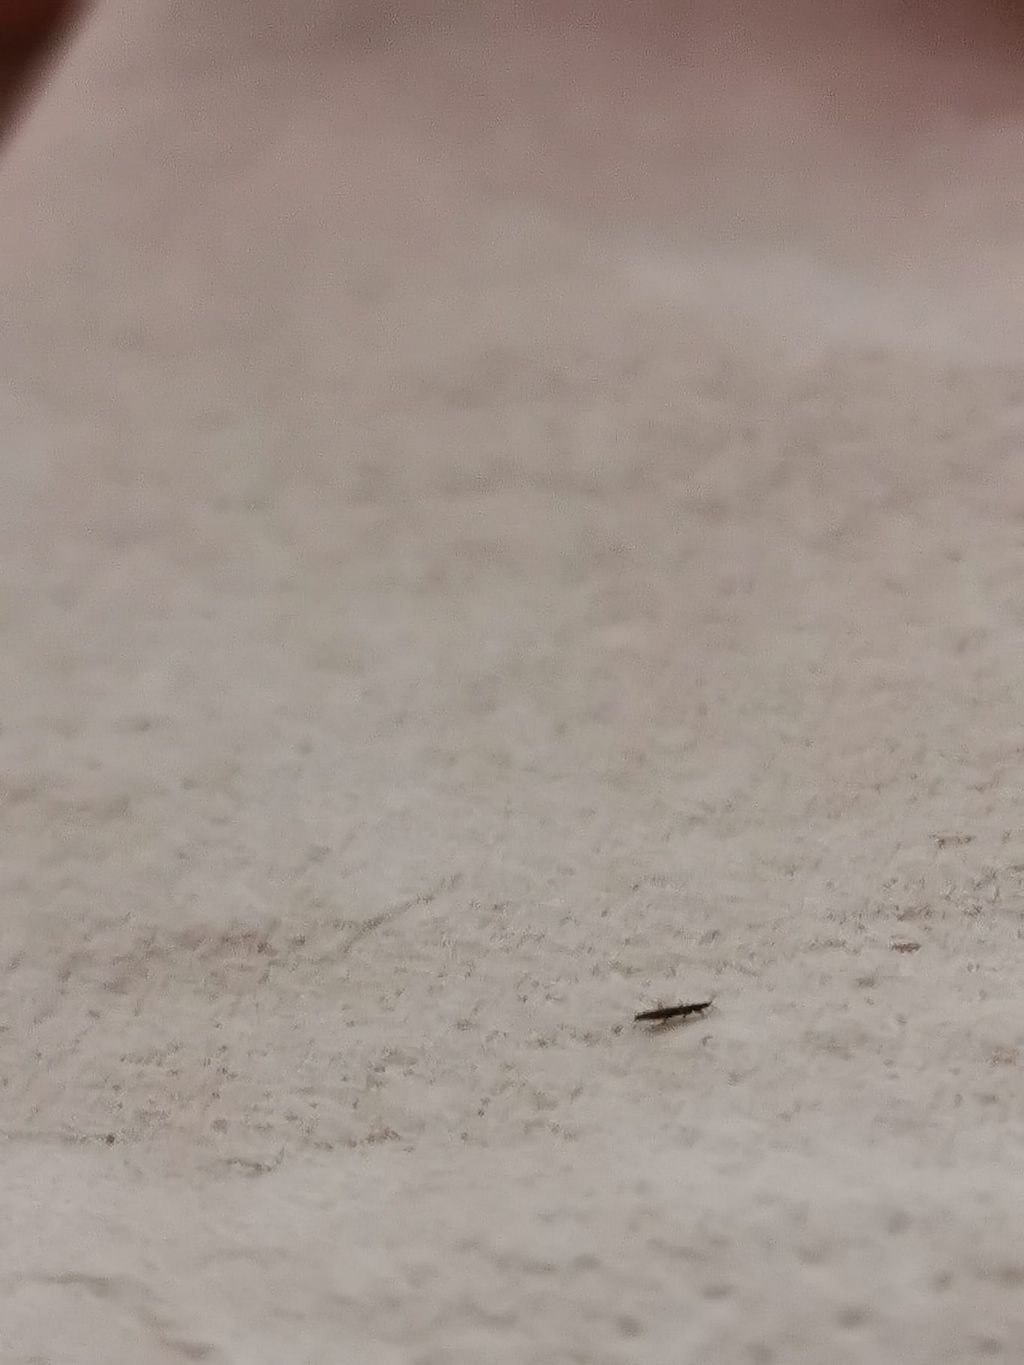 Identificazione questo insetto